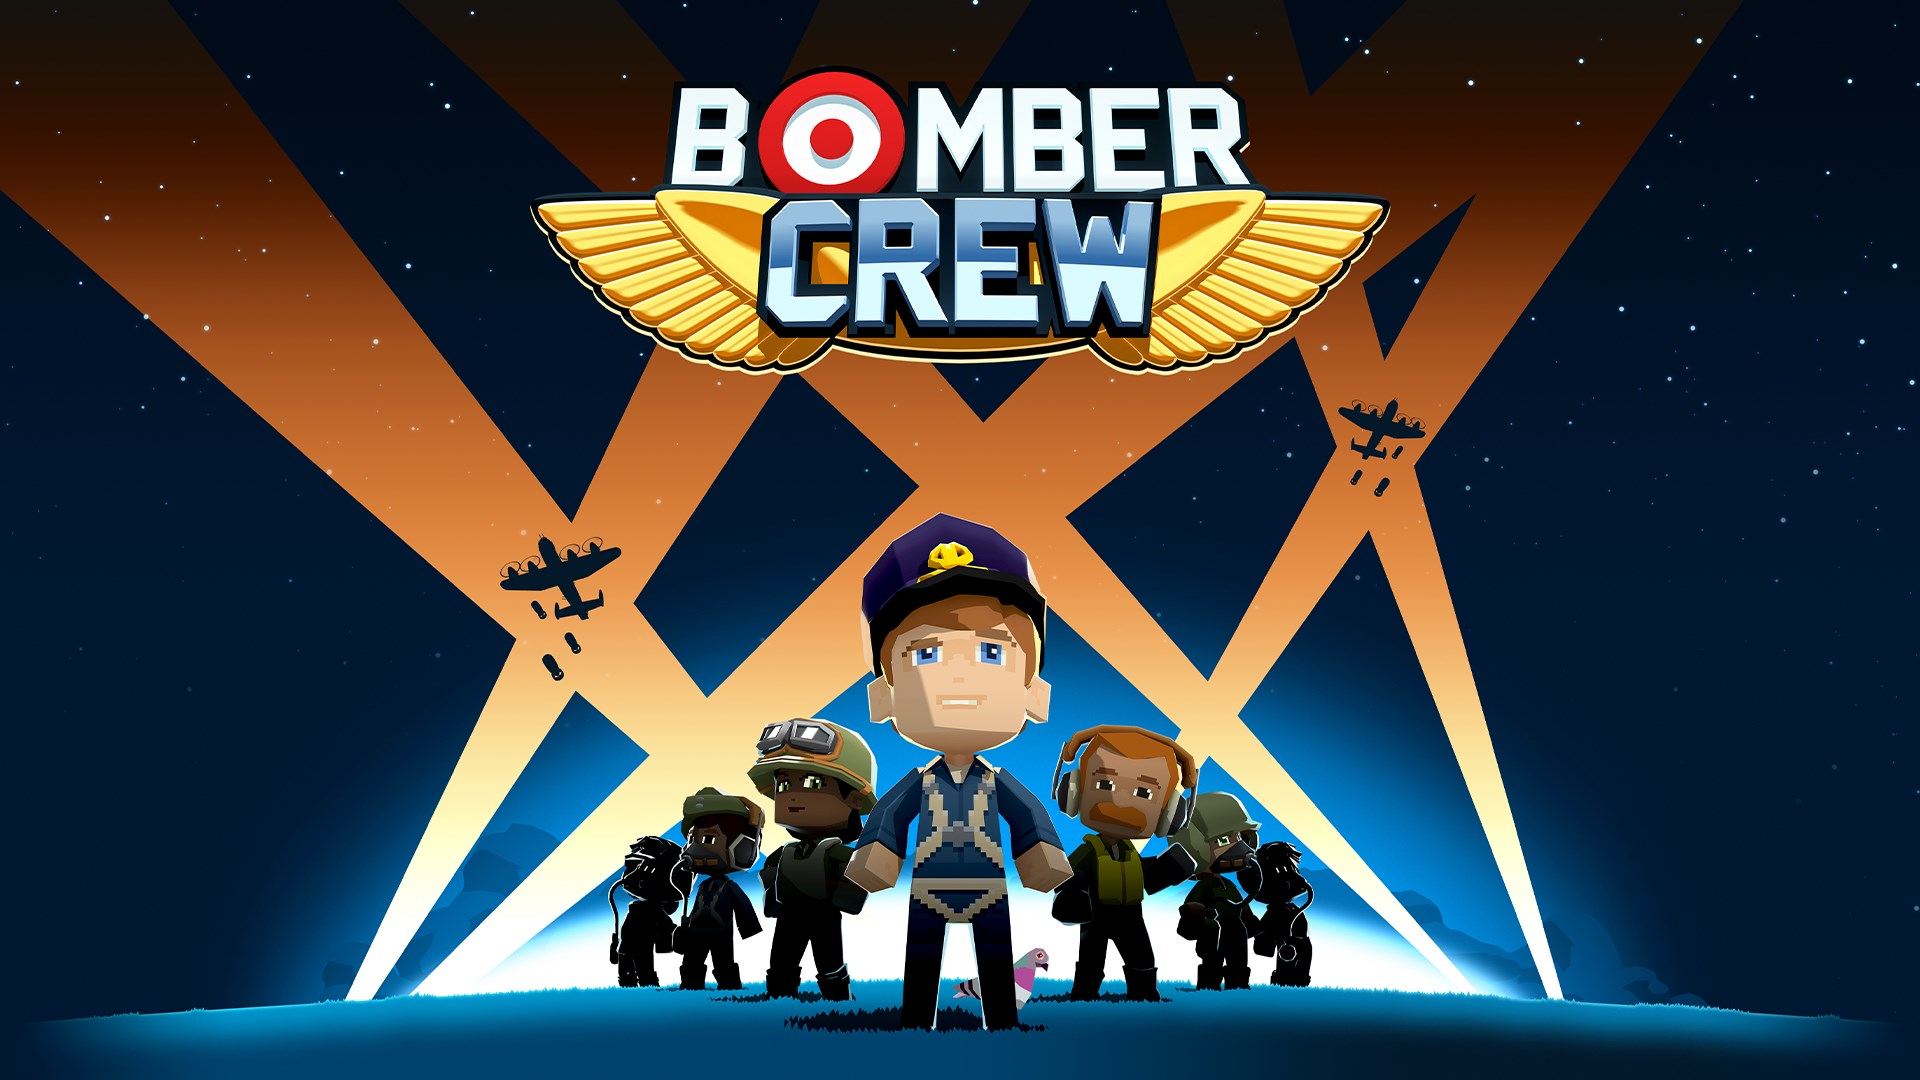 您可以通过 Steam 免费且永久地将 Bomber Crew 游戏添加到您的存档中。